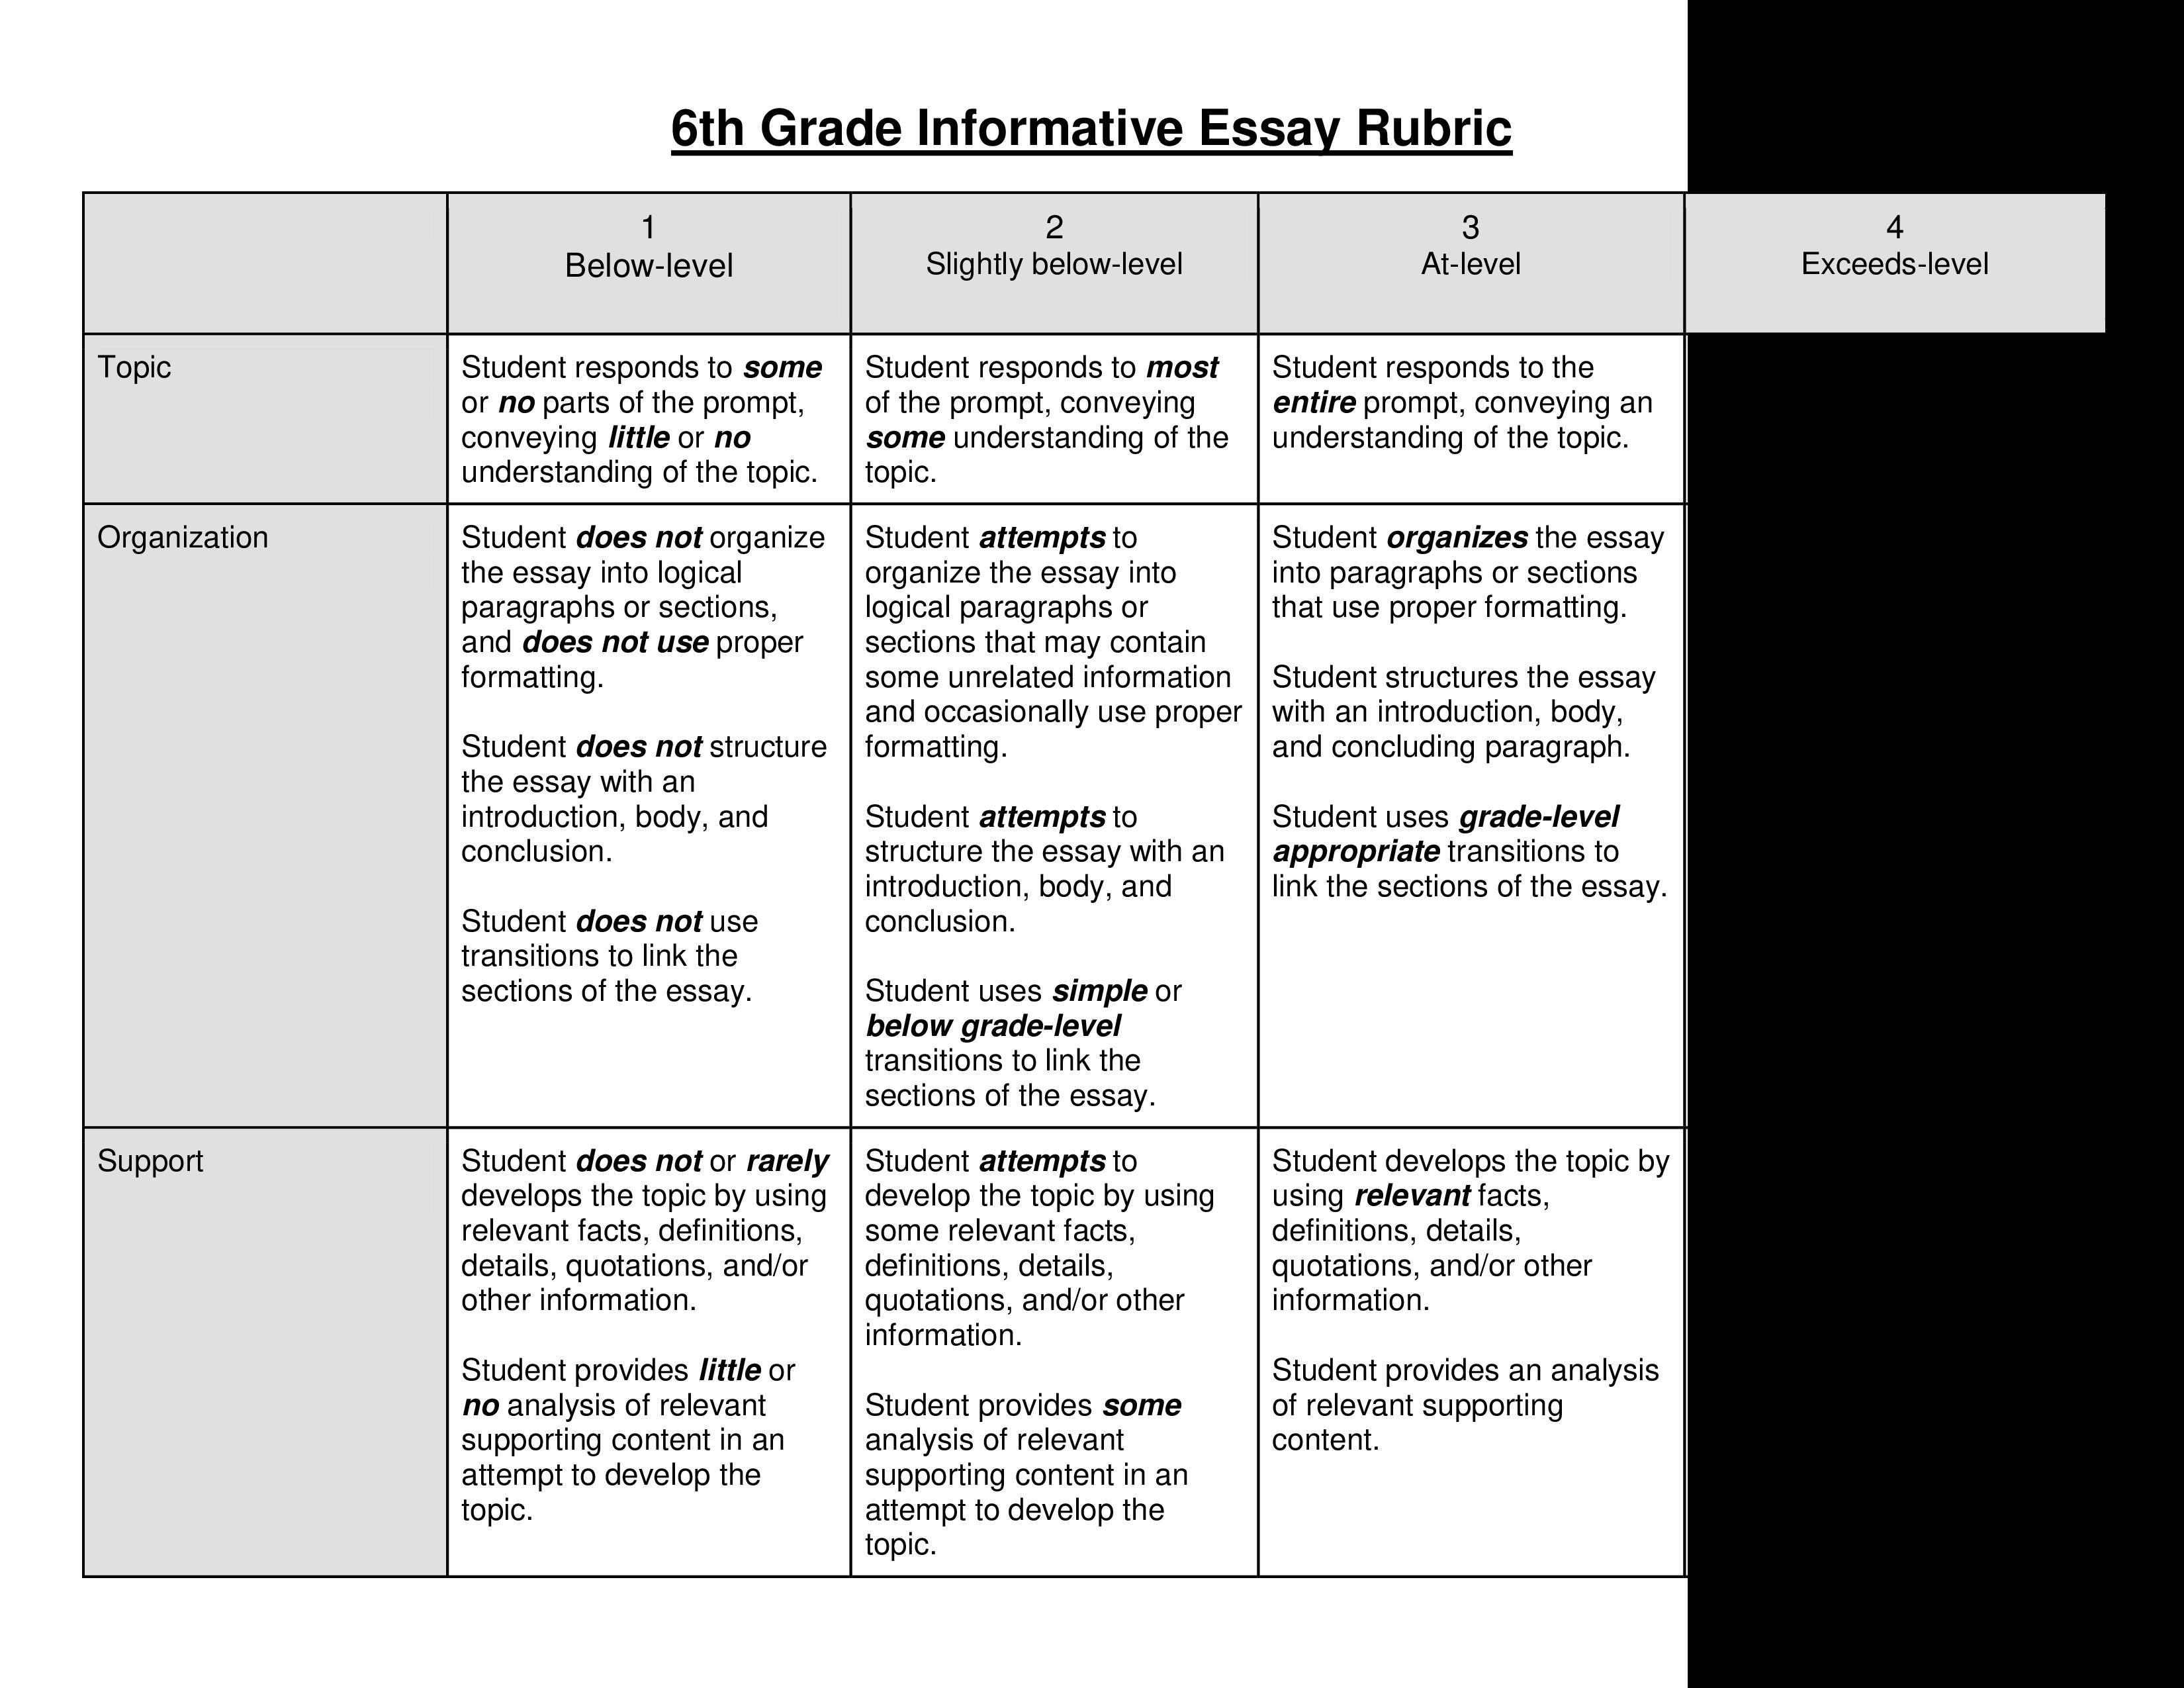 8th grade informative essay rubric